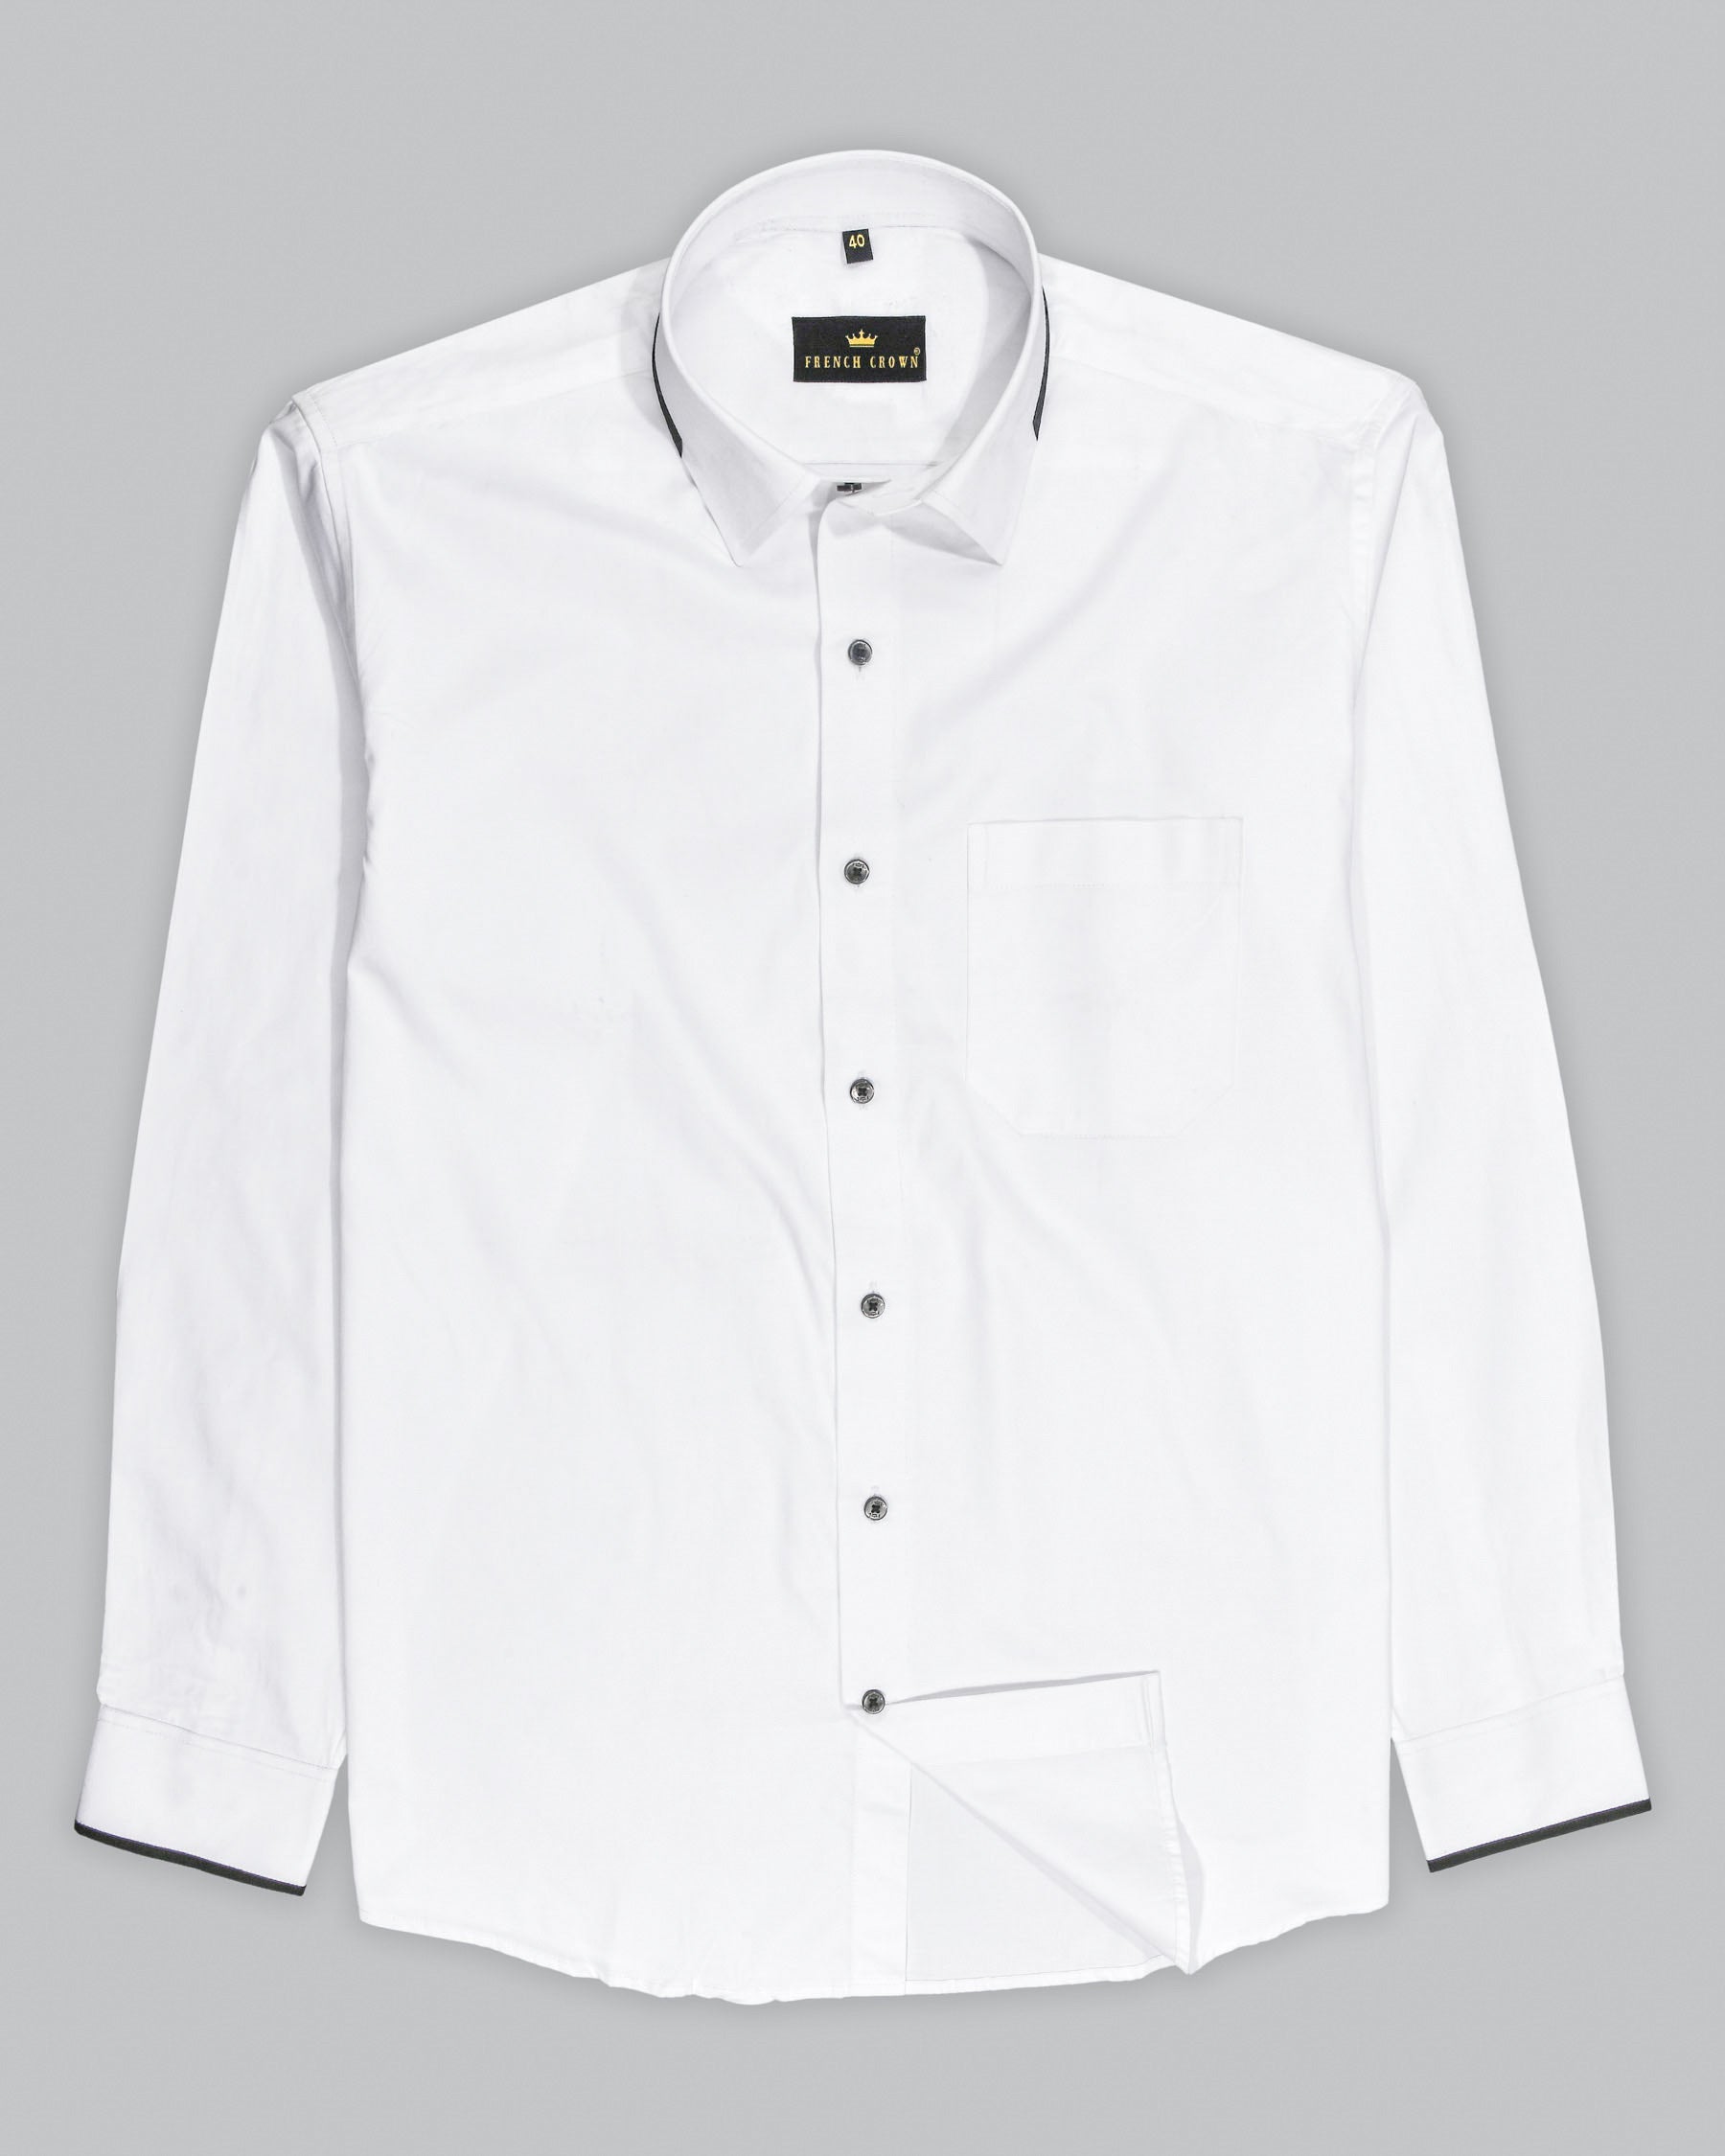 Bright White Subtle Sheen Super Soft Premium Cotton Designer Shirt 4379-BLK-P33-38, 4379-BLK-P33-H-38, 4379-BLK-P33-39, 4379-BLK-P33-H-39, 4379-BLK-P33-40, 4379-BLK-P33-H-40, 4379-BLK-P33-42, 4379-BLK-P33-H-42, 4379-BLK-P33-44, 4379-BLK-P33-H-44, 4379-BLK-P33-46, 4379-BLK-P33-H-46, 4379-BLK-P33-48, 4379-BLK-P33-H-48, 4379-BLK-P33-50, 4379-BLK-P33-H-50, 4379-BLK-P33-52, 4379-BLK-P33-H-52